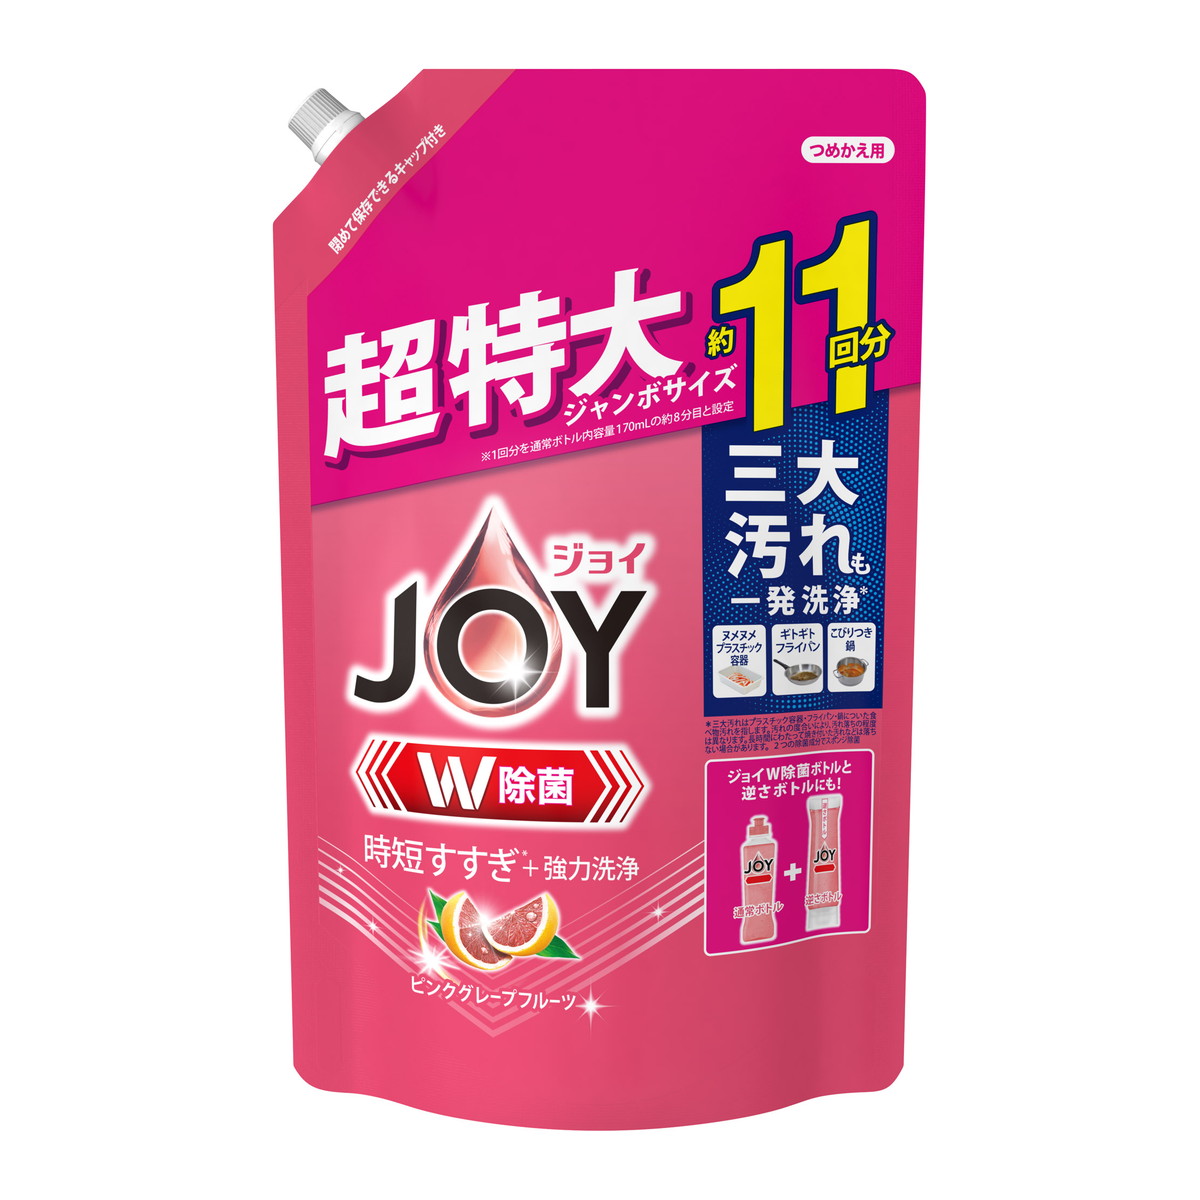 P&G 除菌ジョイコンパクト ピンクグレープフルーツの香り 詰替用 1425ml ×6 ジョイ(P&G) 台所用洗剤の商品画像